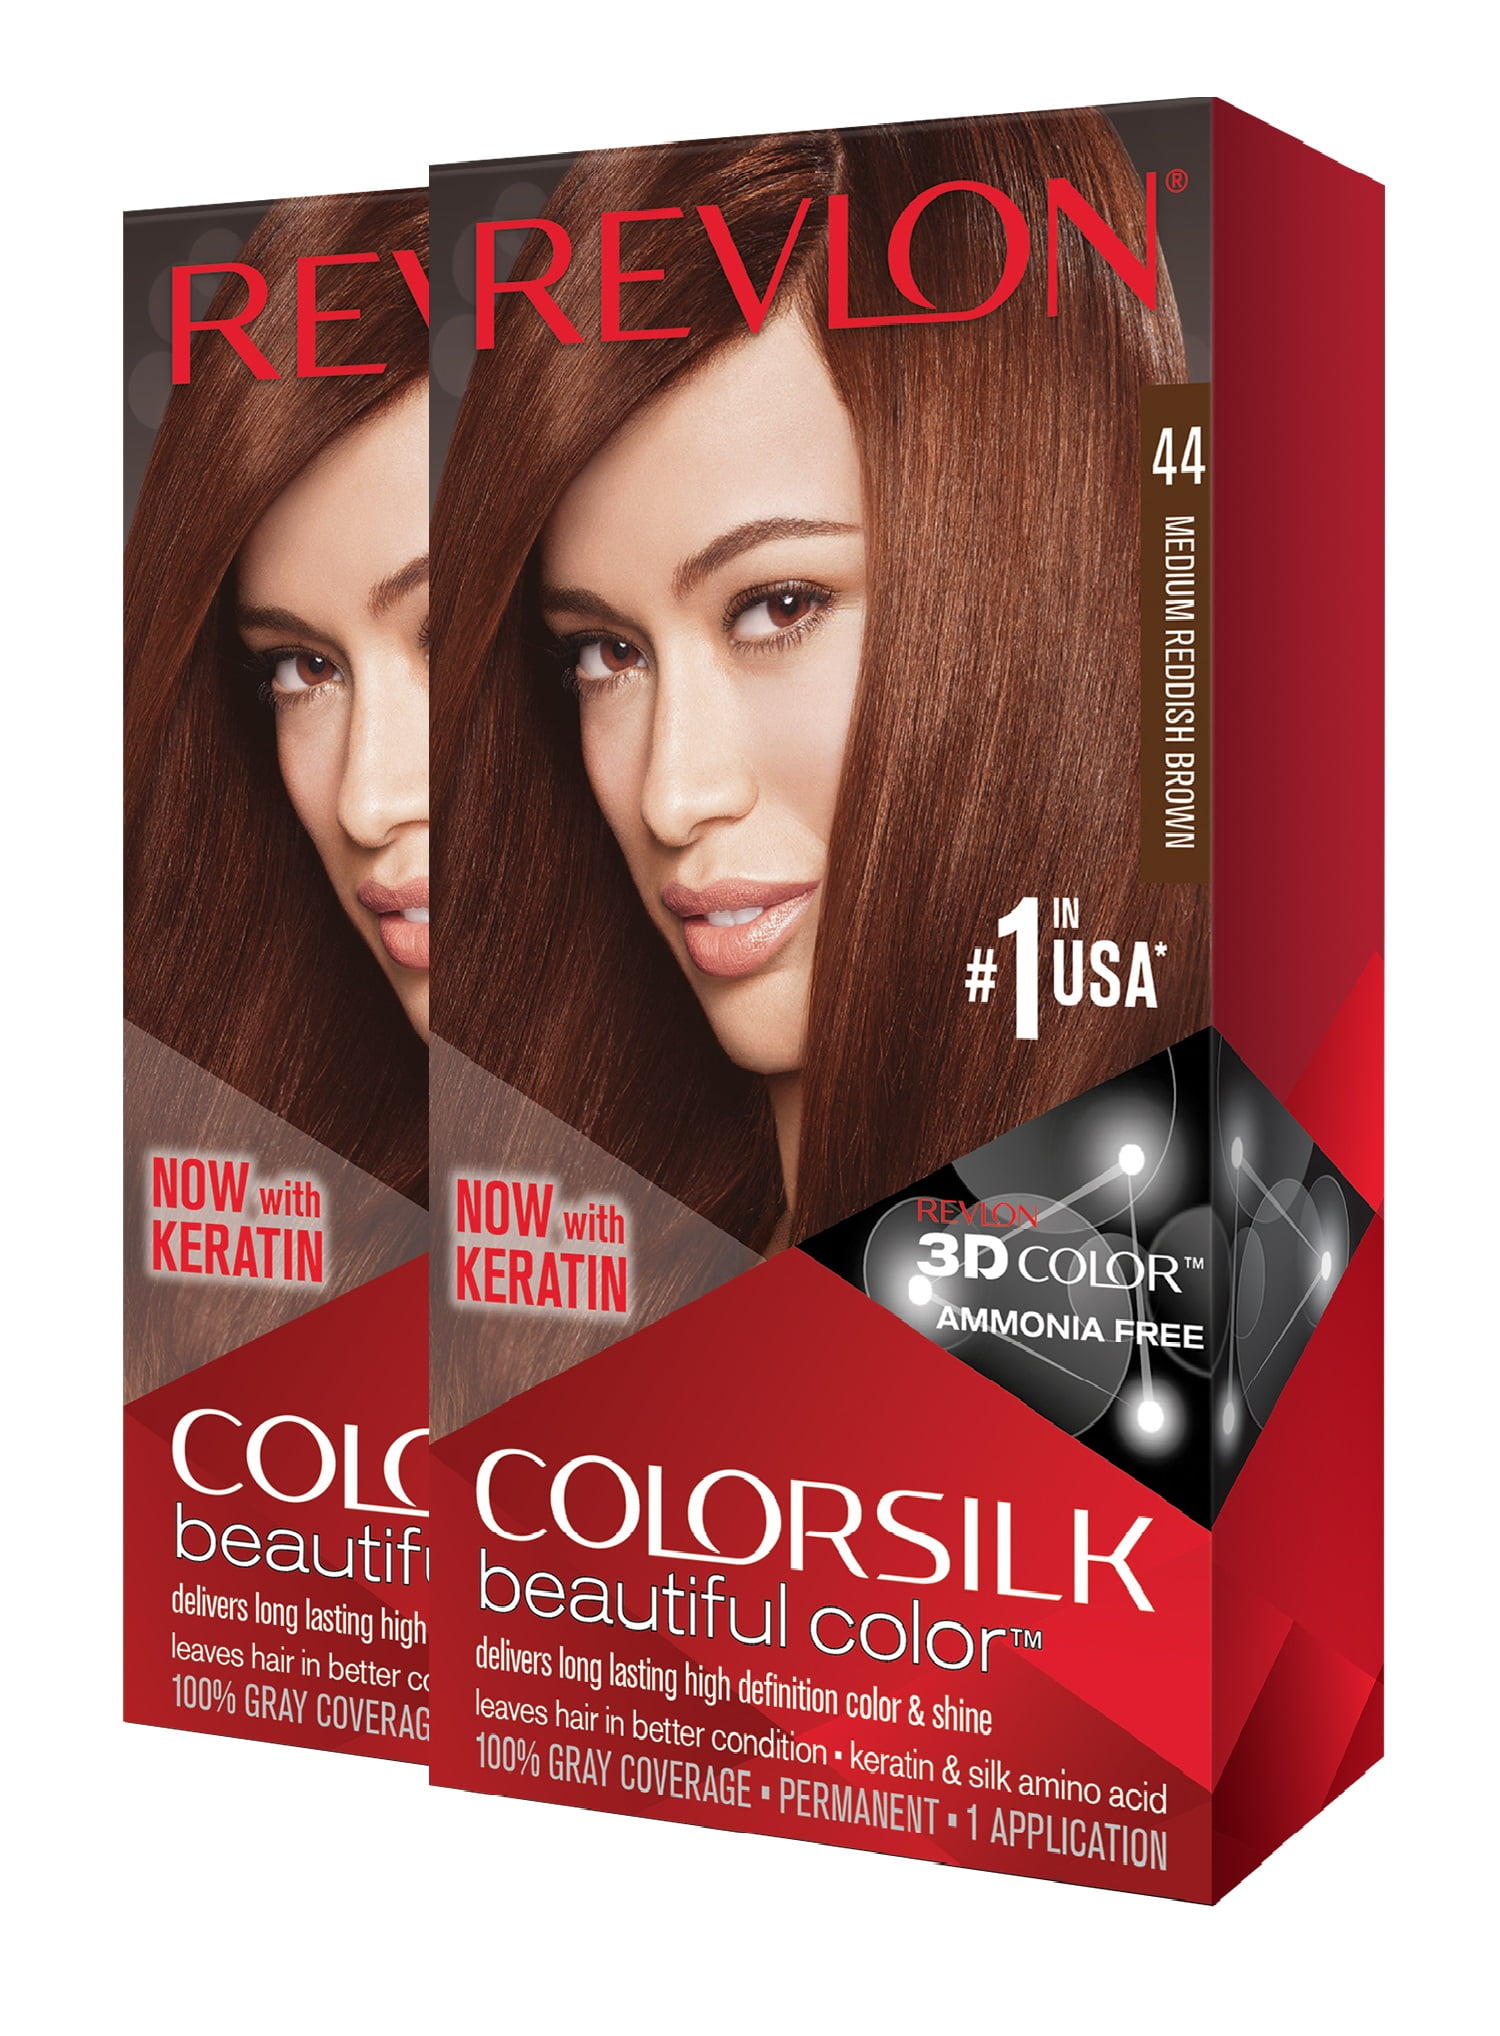 revlon-colorsilk-hair-color-chart-soft-brown-hair-revlon-hair-color-revlon-colorsilk-beautiful